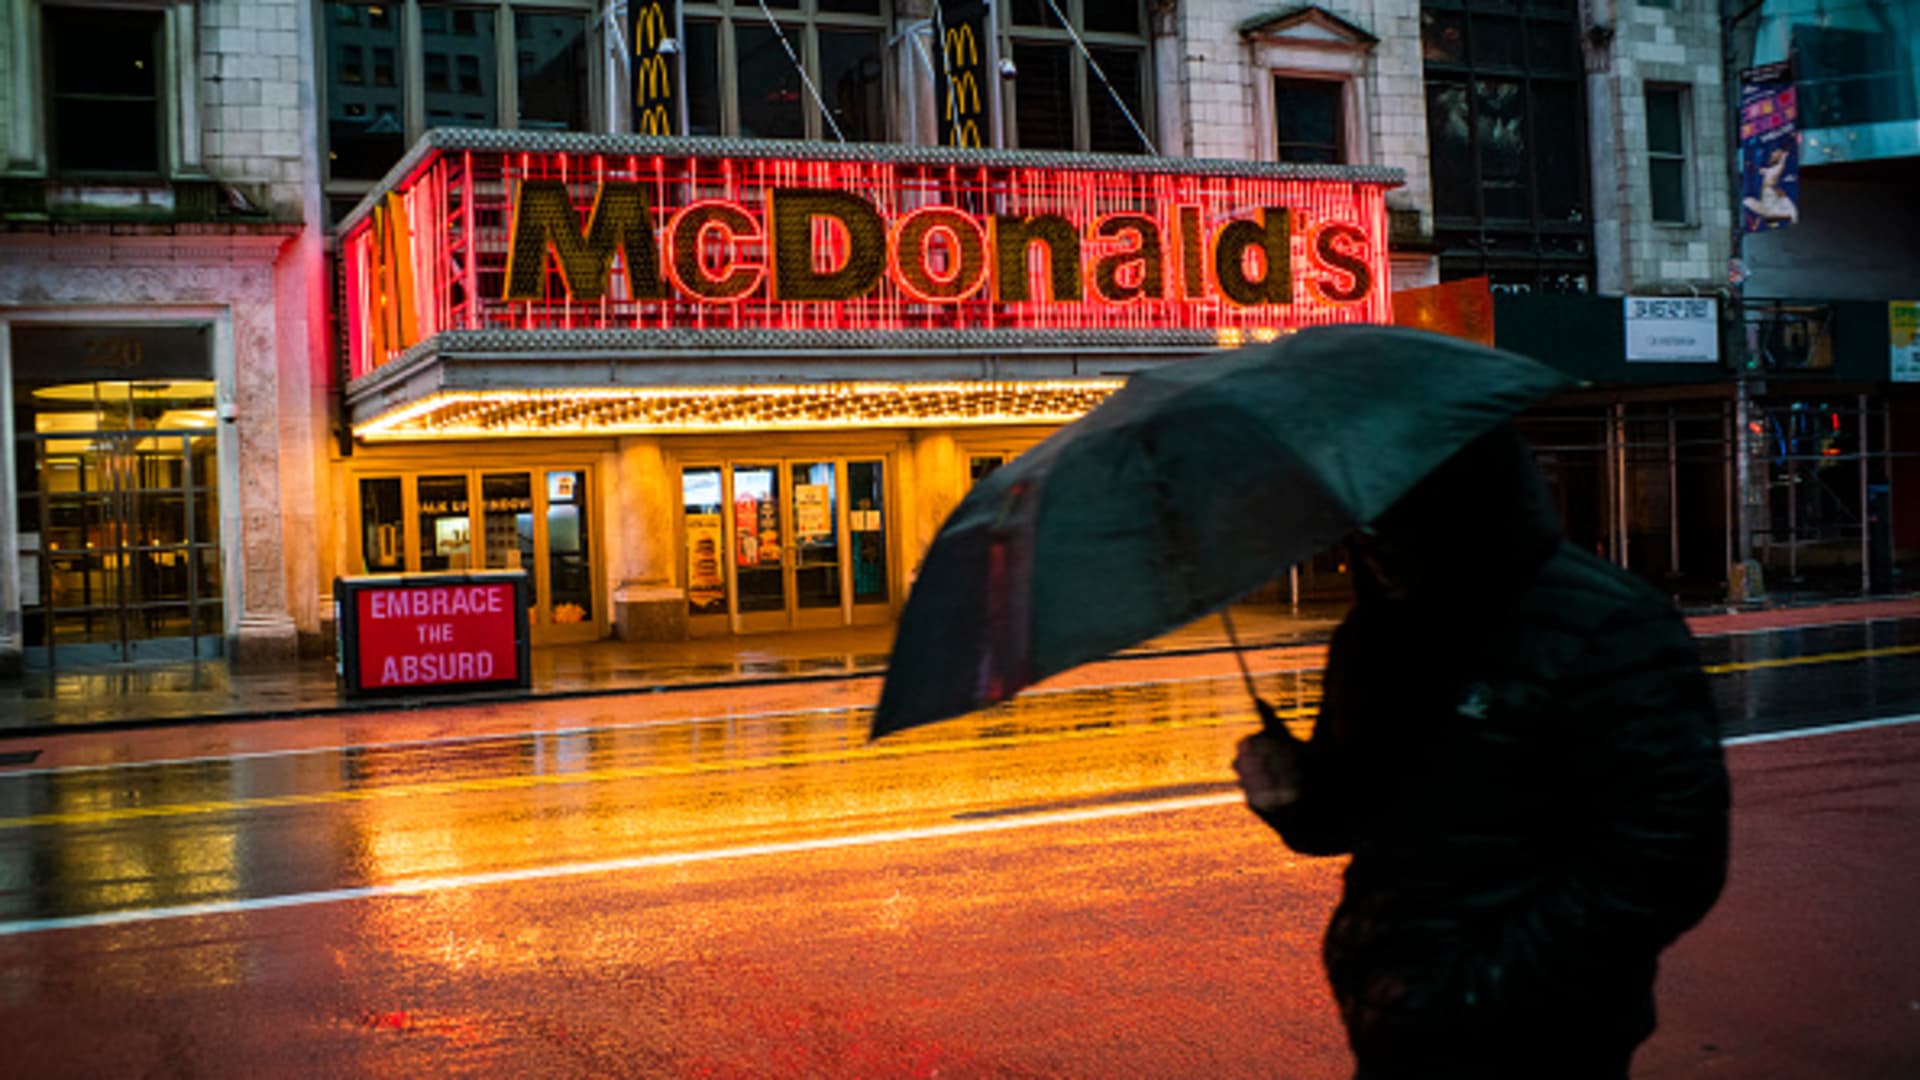 McDonald’s (MCD) Q1 2022 earnings beat estimates